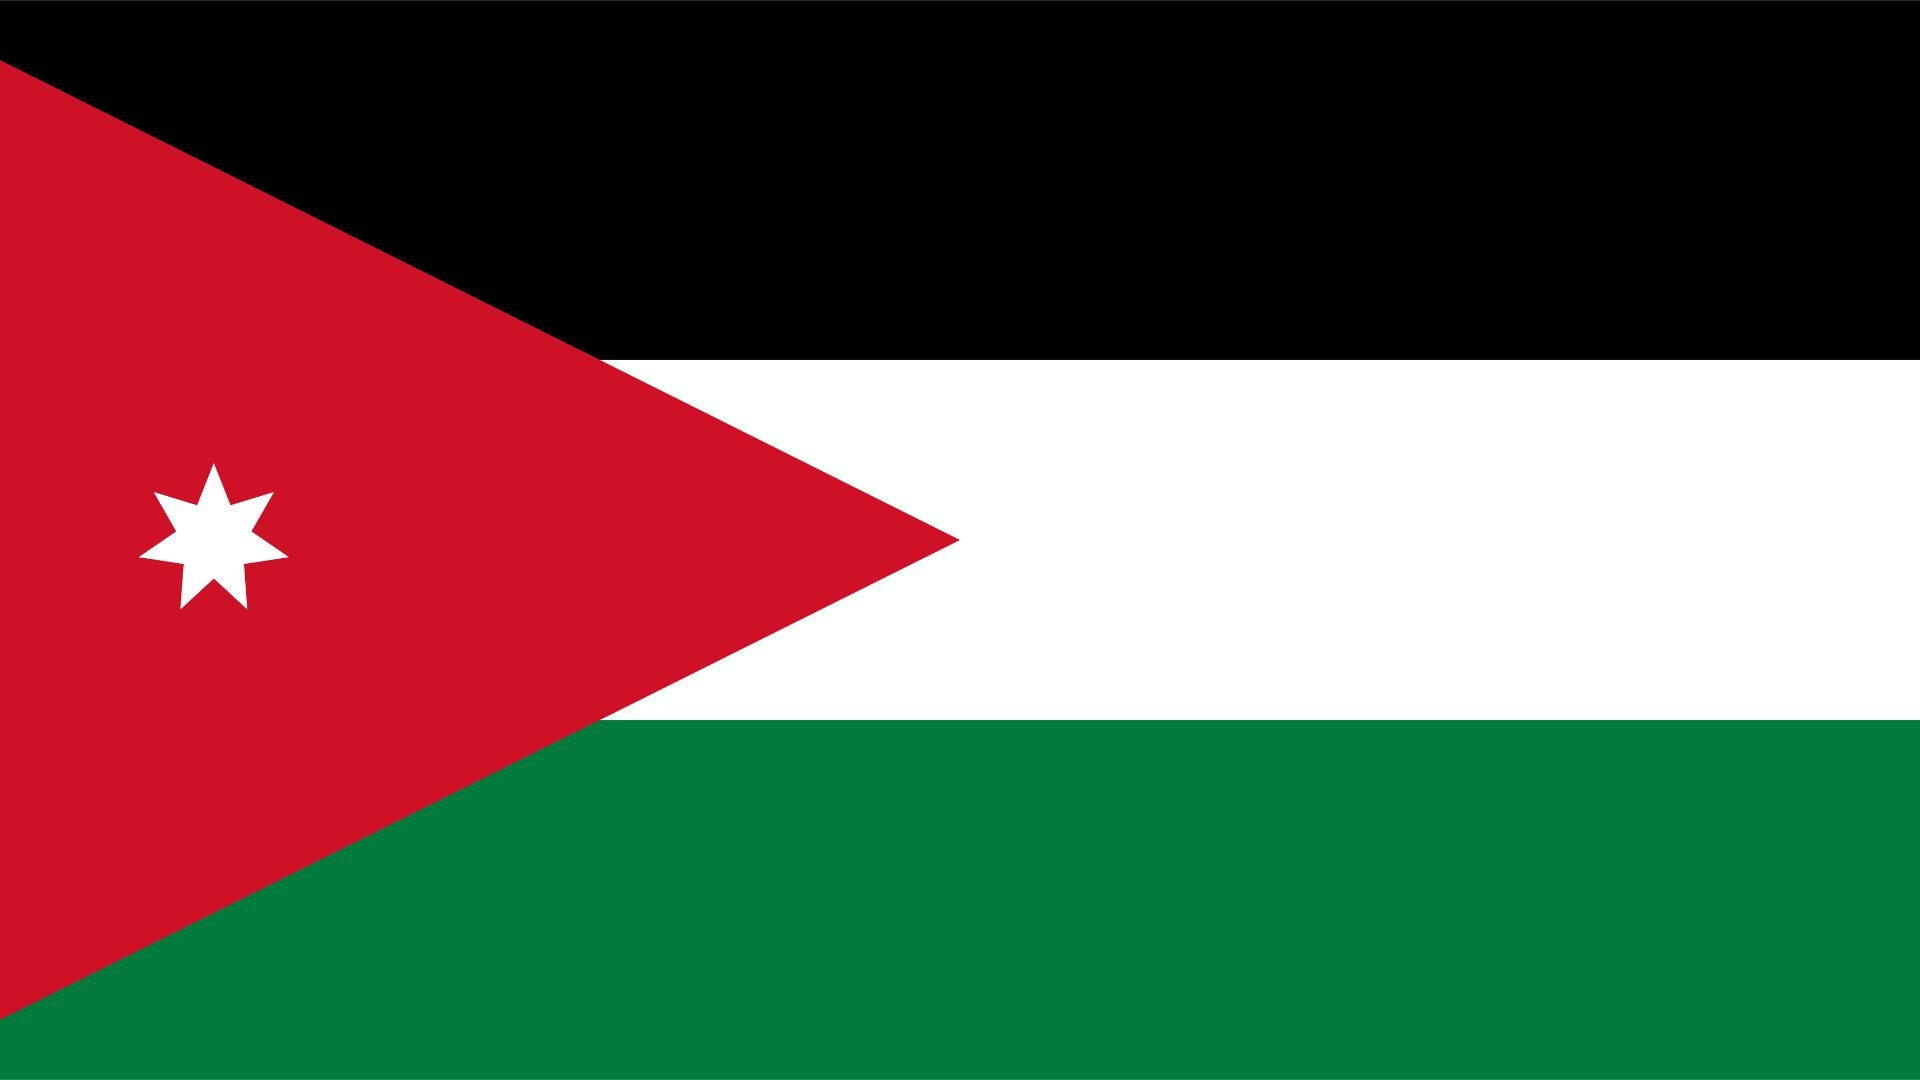 A bandeira da Jordânia consiste em três faixas horizontais (preto, branco e verde), todas conectadas por um triângulo vermelho na borda horizontal. As cores horizontais representam os califados Abássida, Omíada e Fatímida.